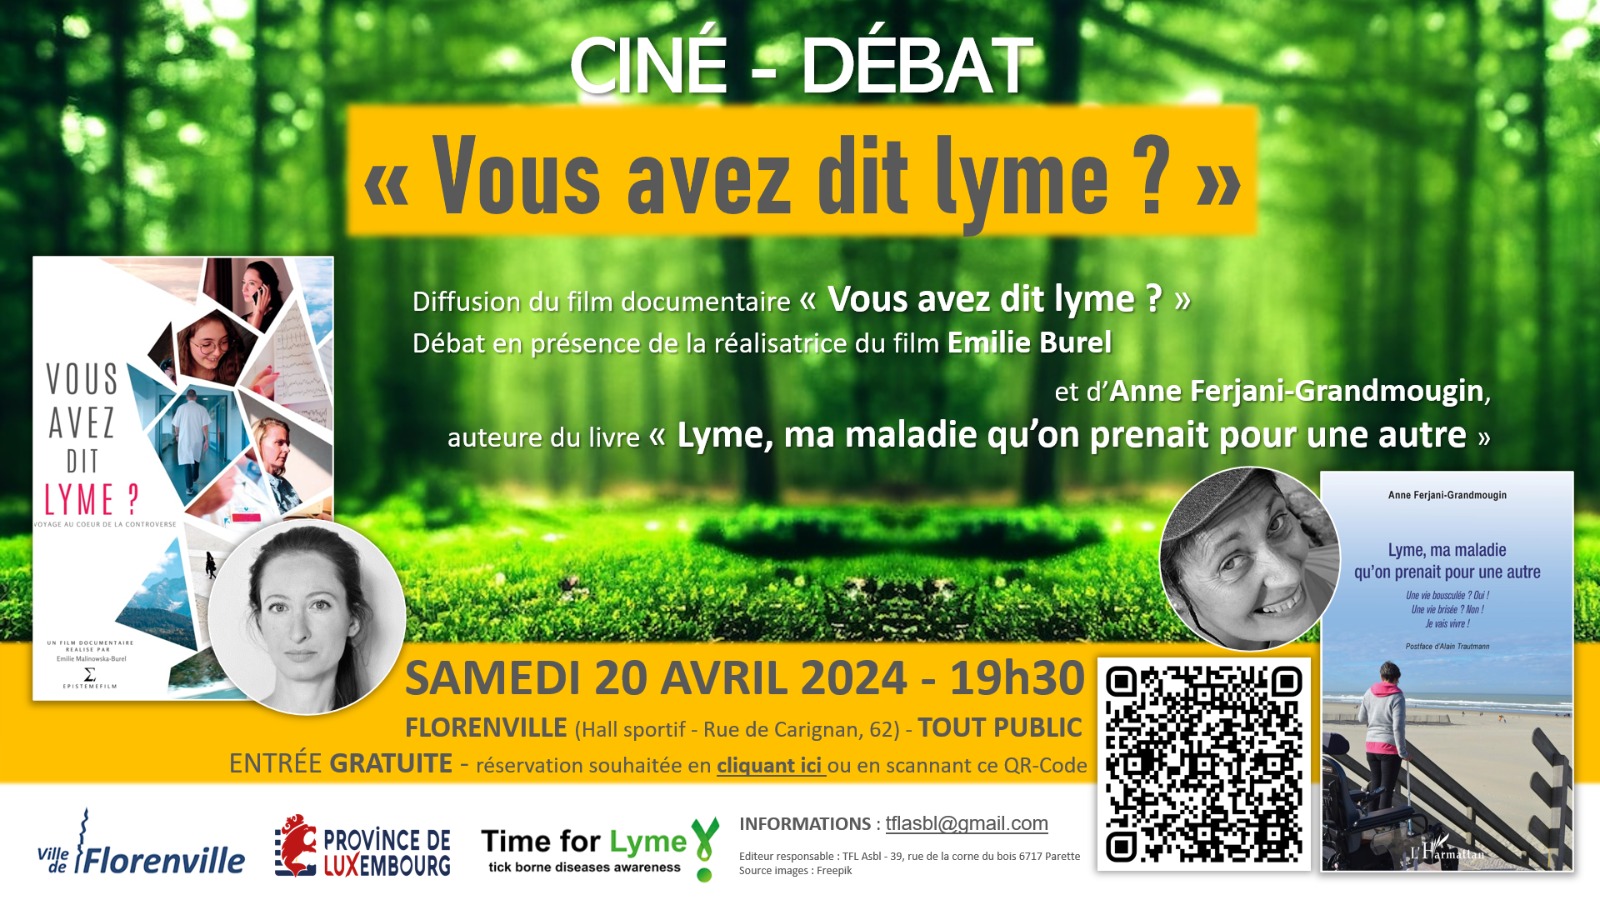 Ciné-Débat avec le film « Vous avez dit Lyme ? » à Florenville le 20 avril 2024